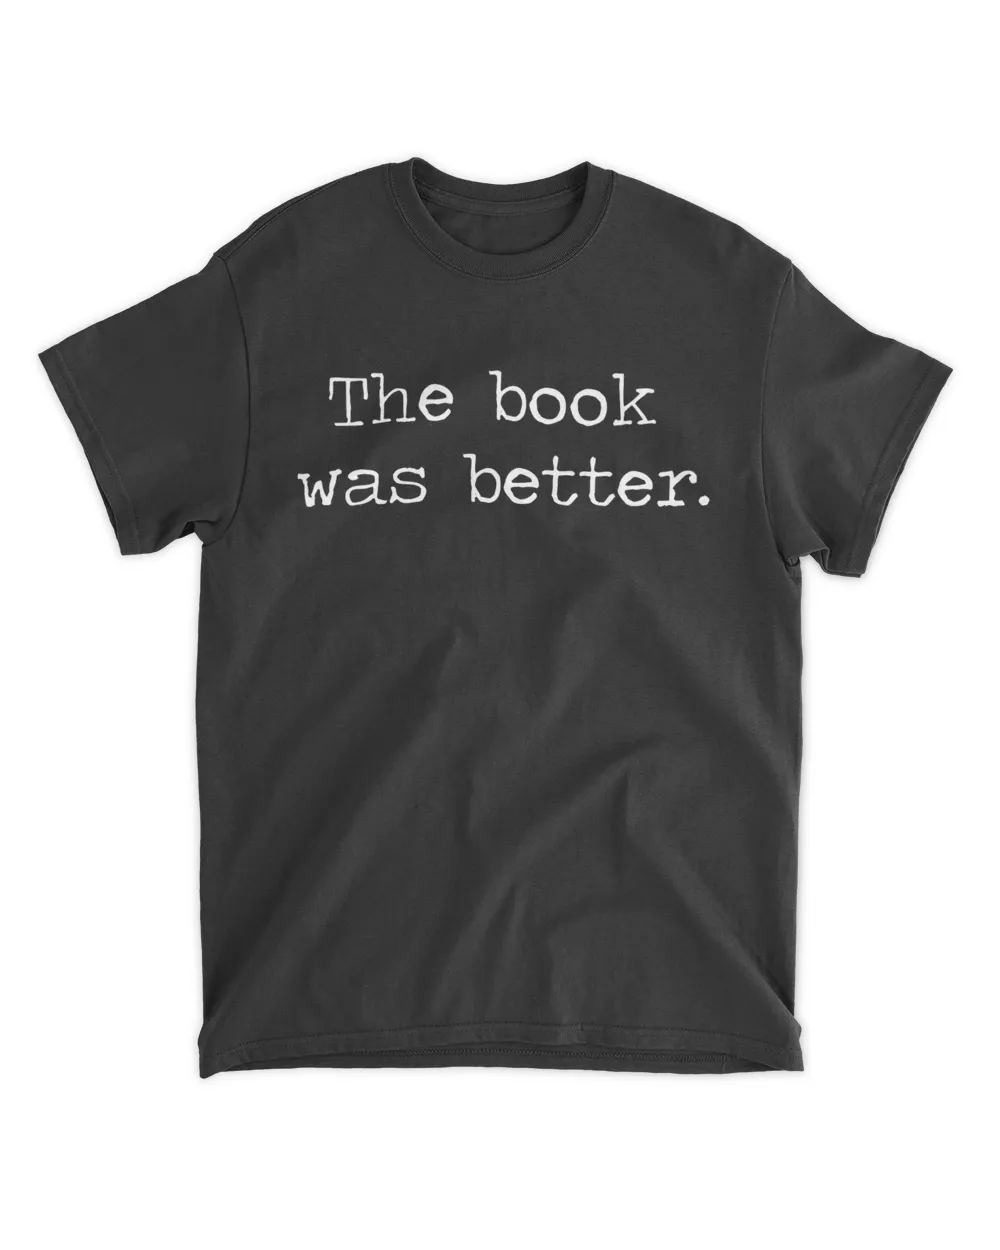 The Book Was Better Shirt